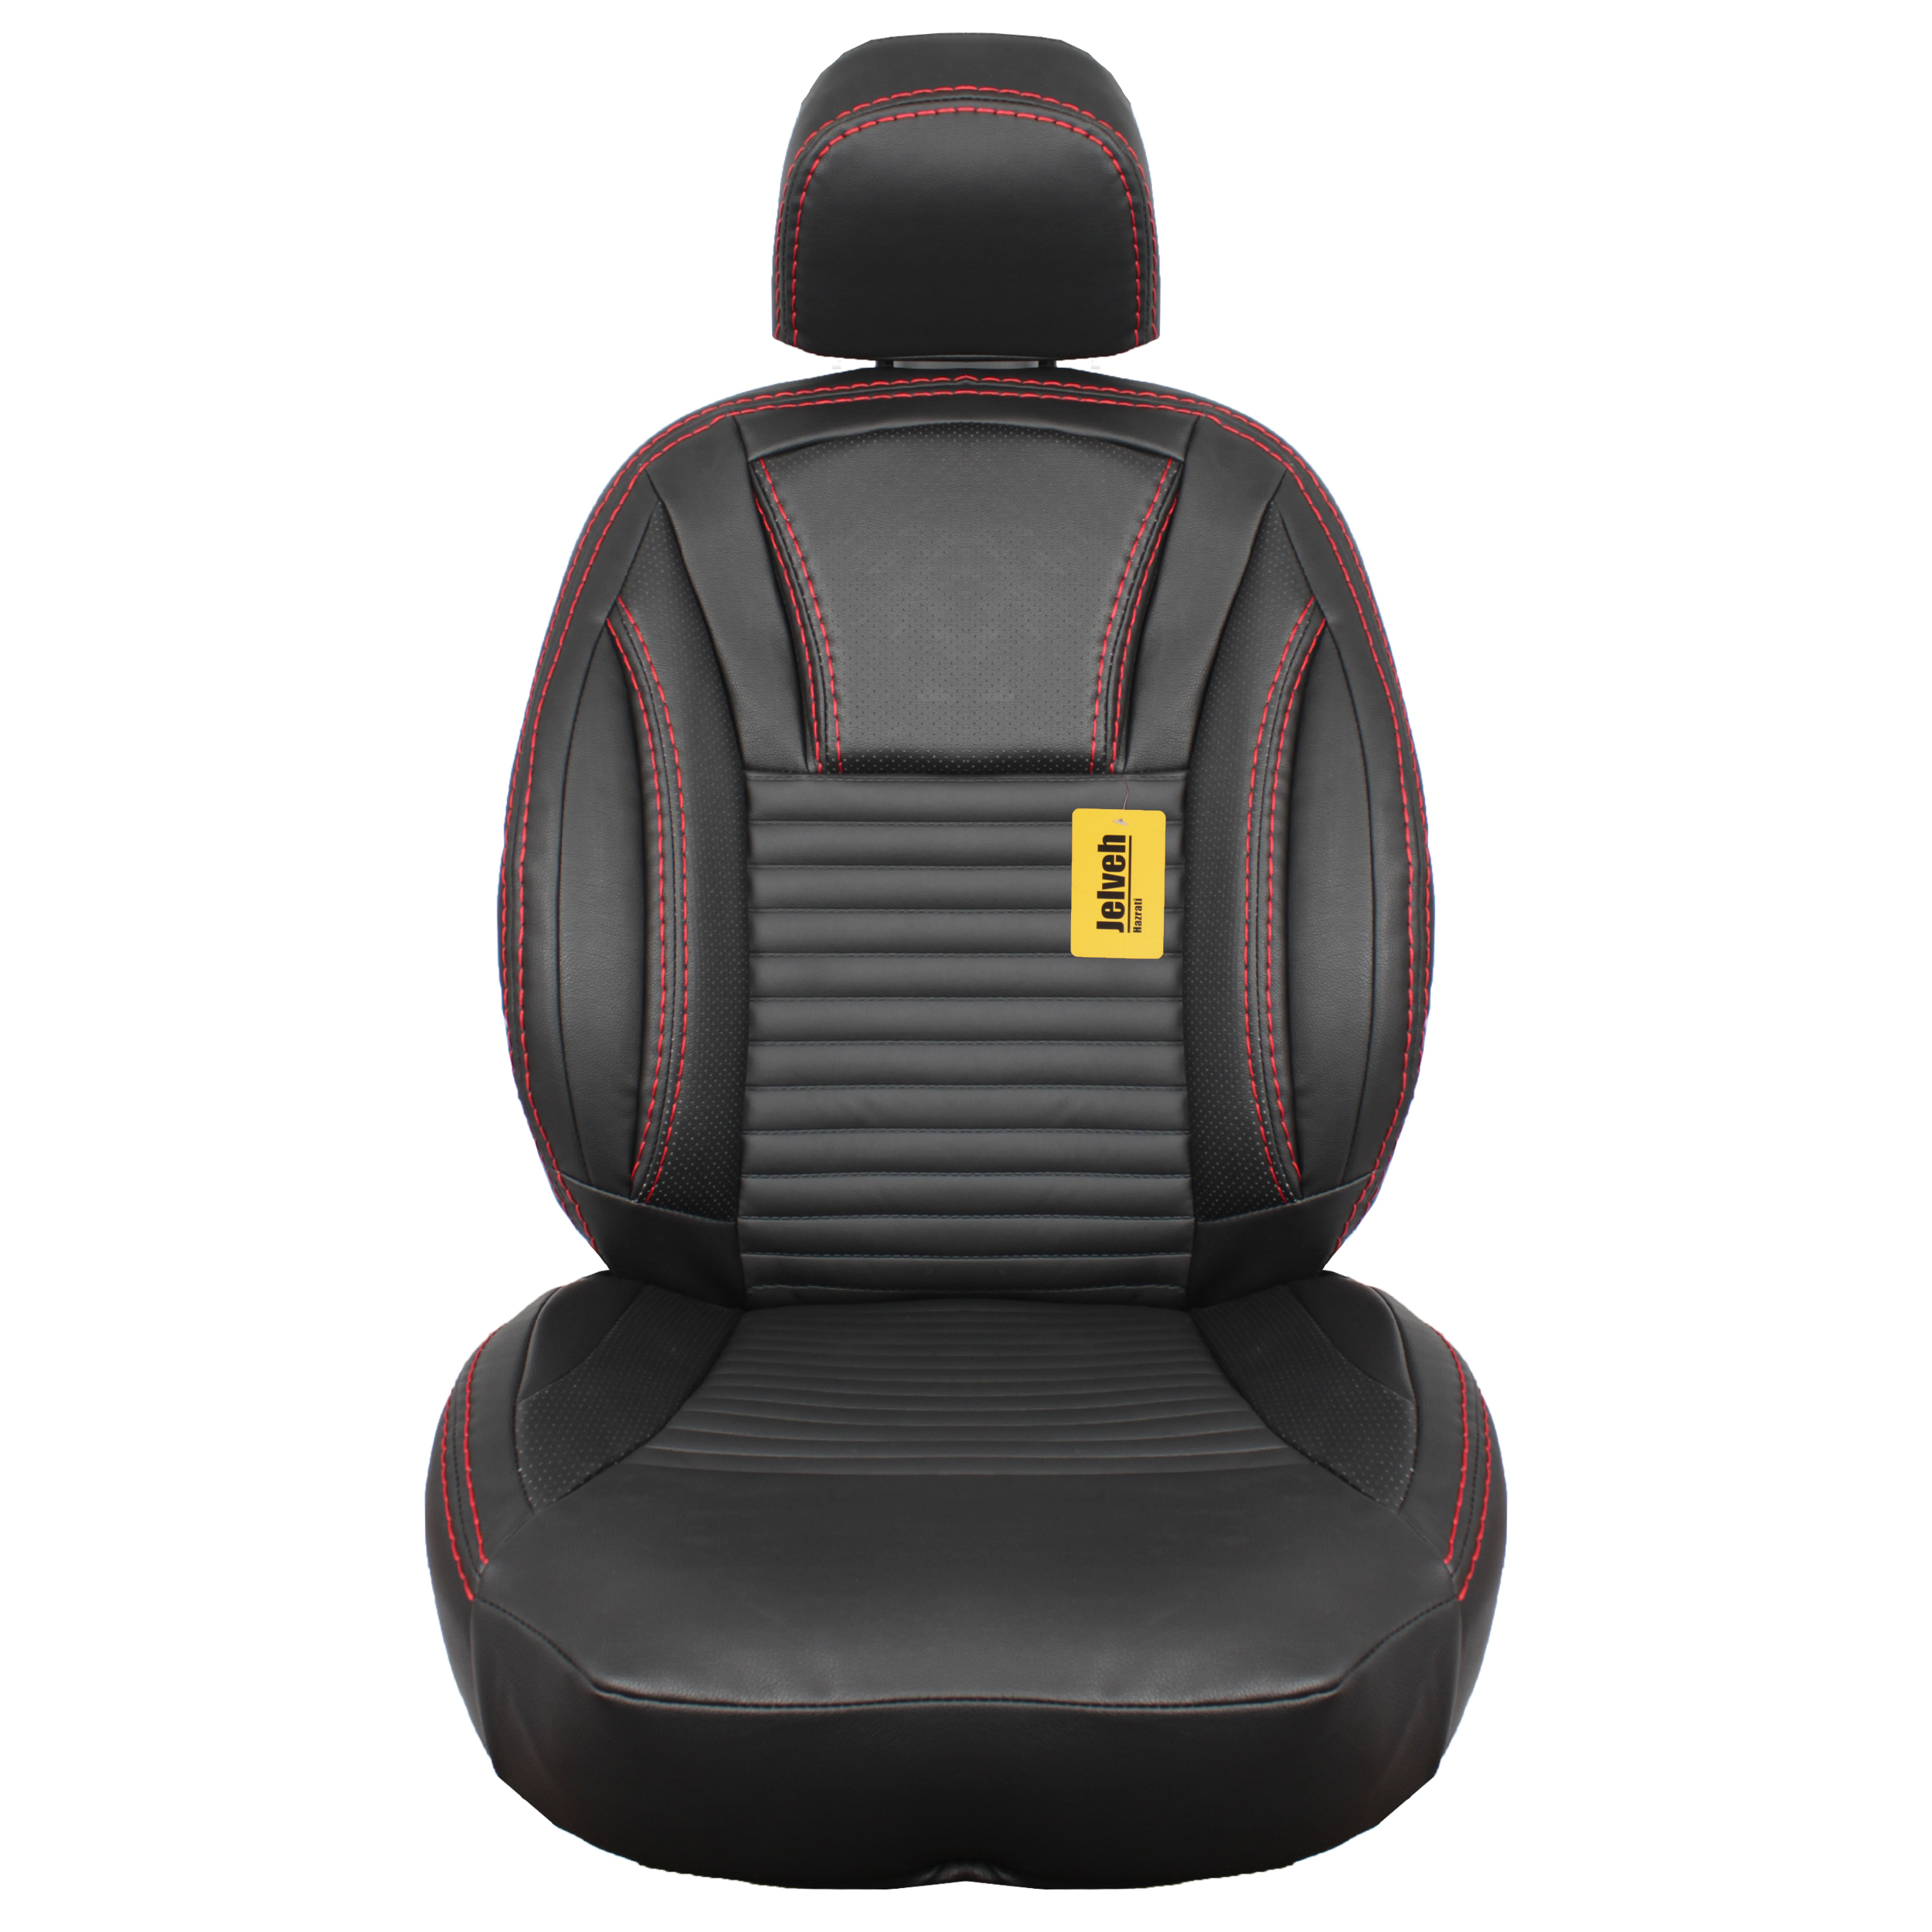 نکته خرید - قیمت روز روکش صندلی خودرو جلوه مدل خلبانی کد 12 مناسب برای کوییک S خرید